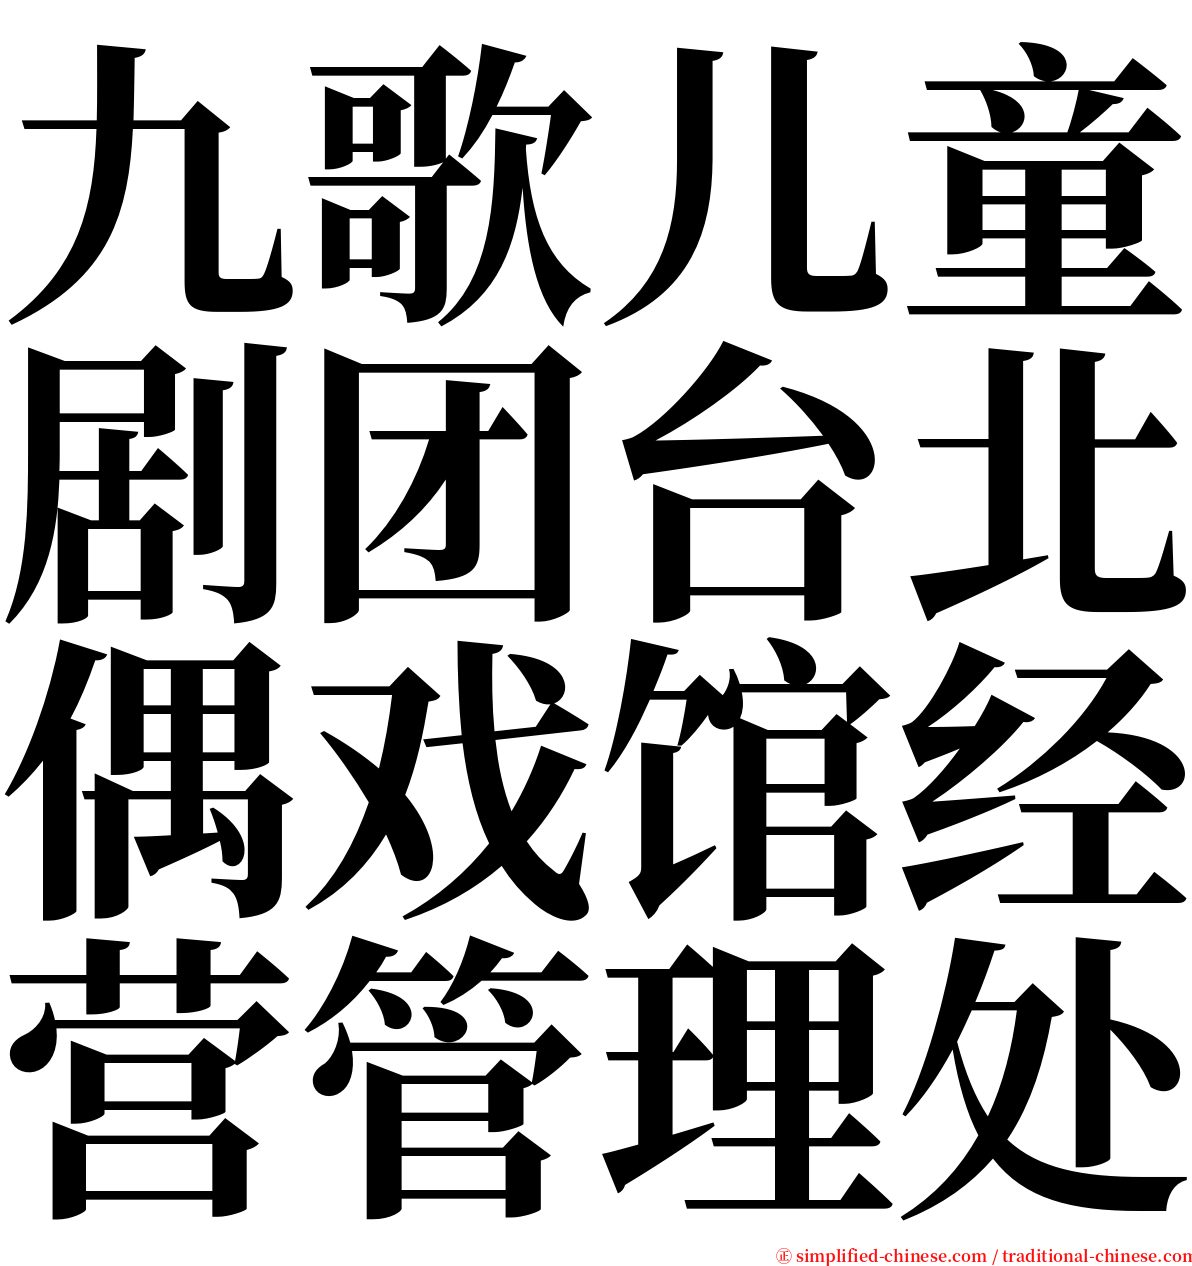 九歌儿童剧团台北偶戏馆经营管理处 serif font